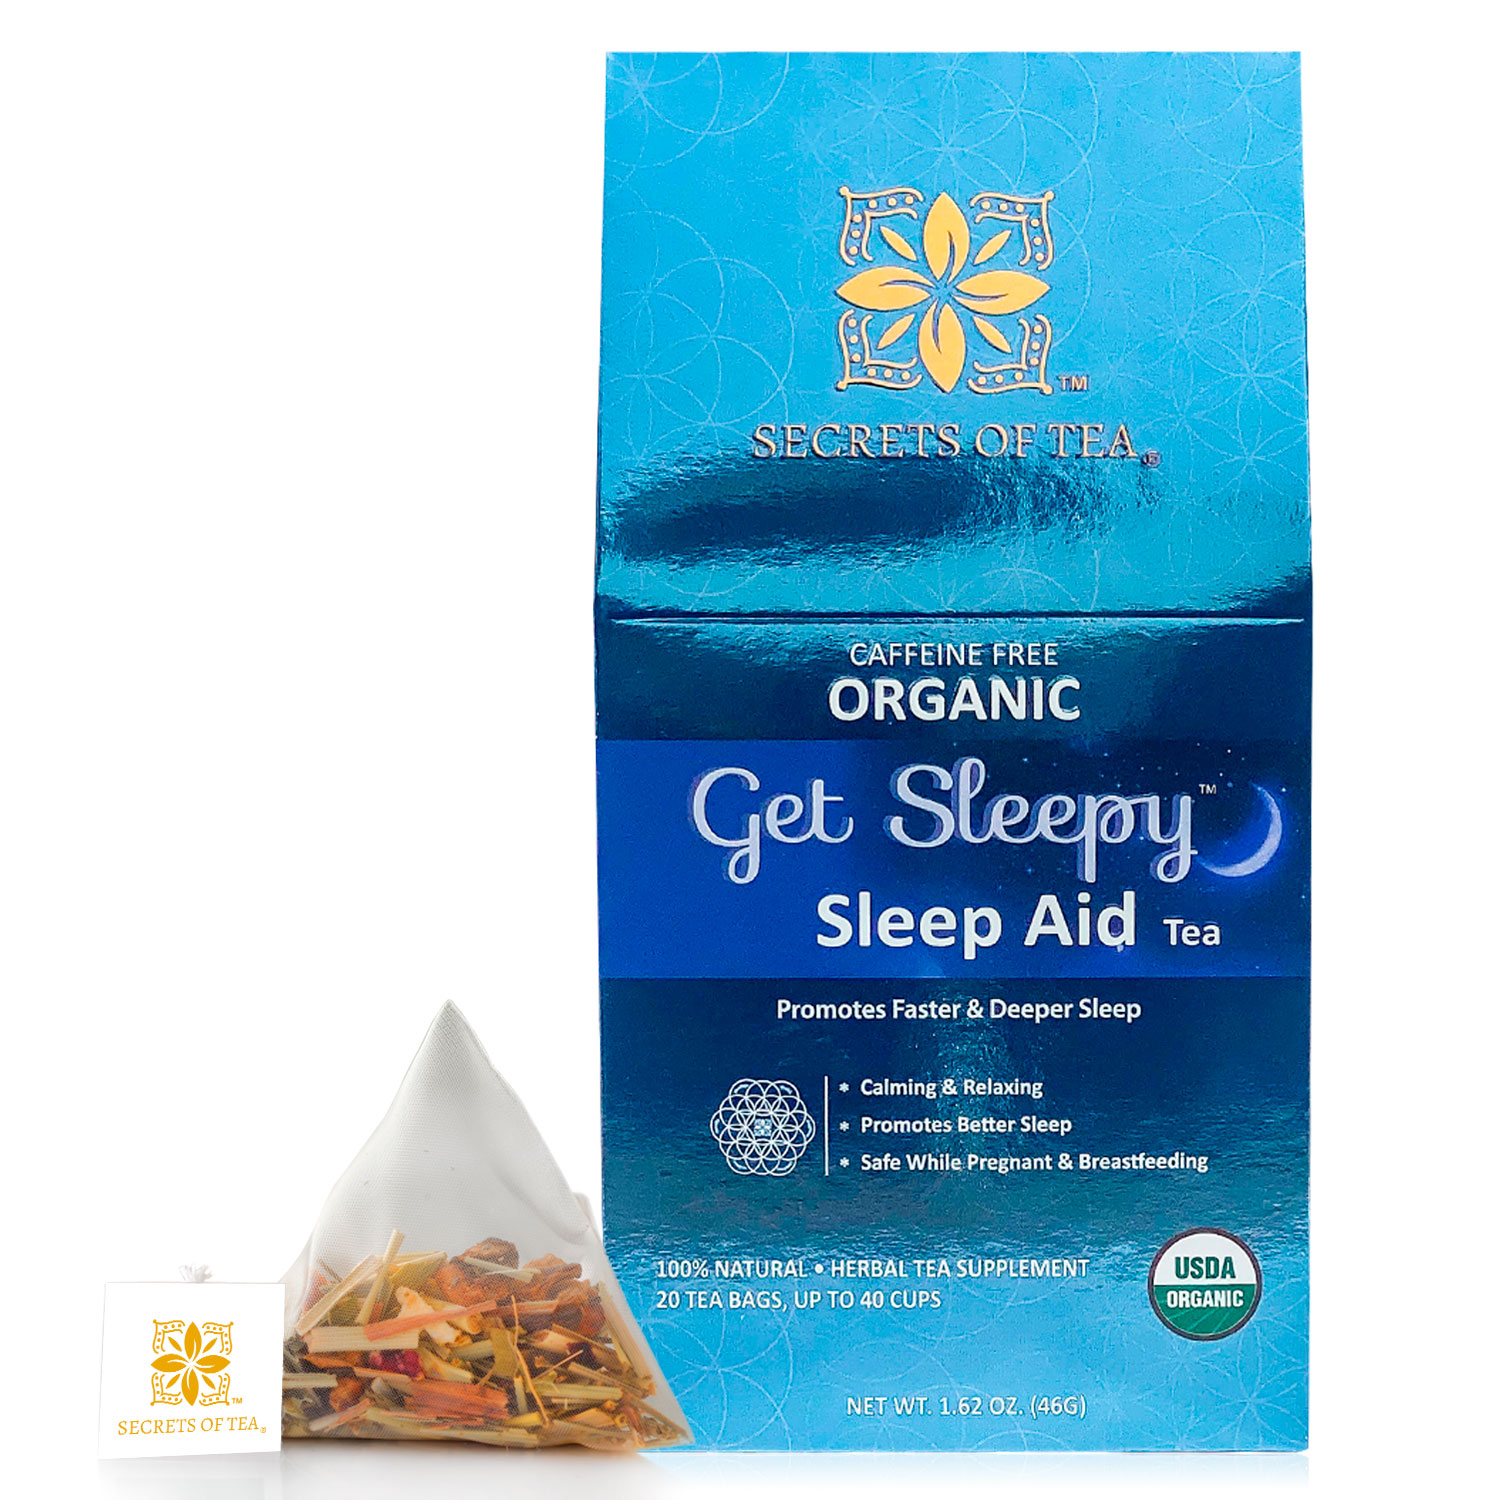 Secrets of Tea Get Sleepy Sleep Aid Tea 2 innerpacks per case 2.0 oz